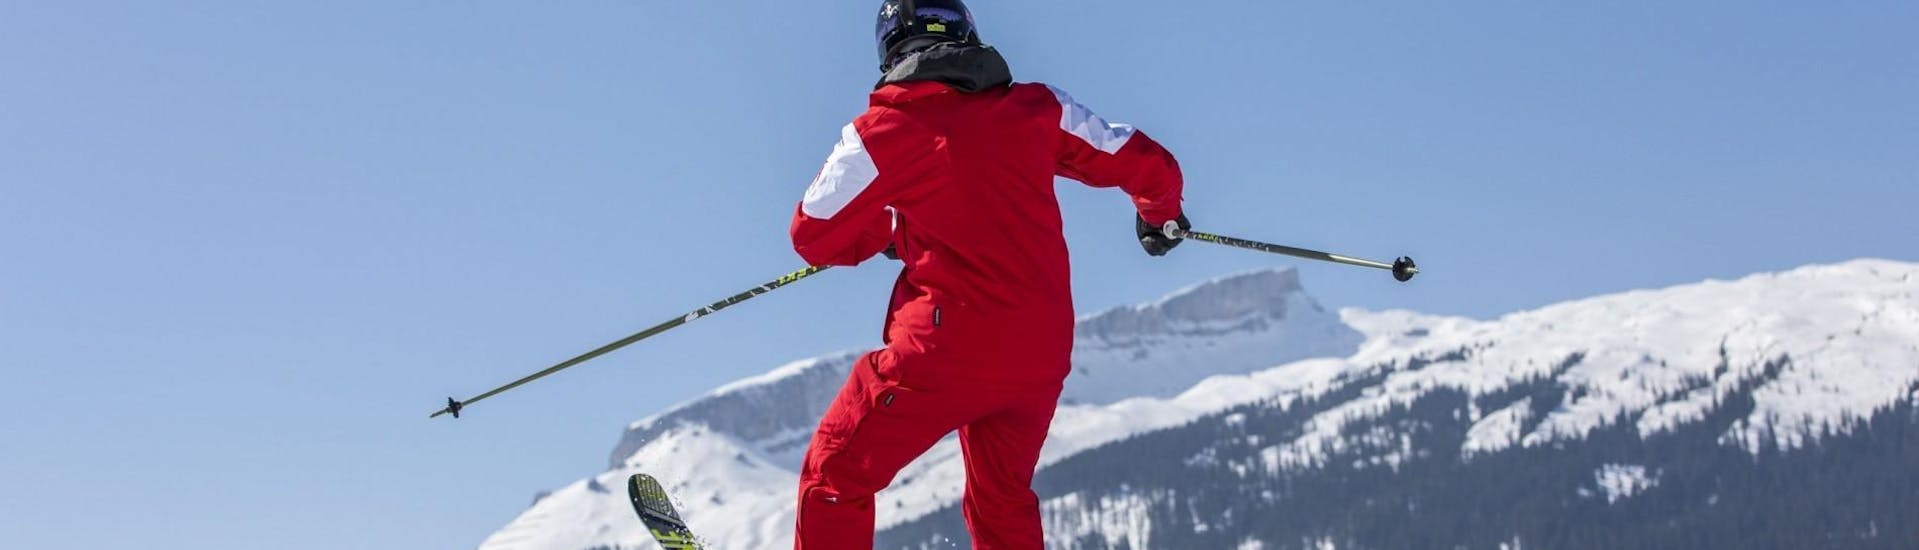 Park & Freestyle Skiing privato a partire da 4 anni per tutti i livelli.